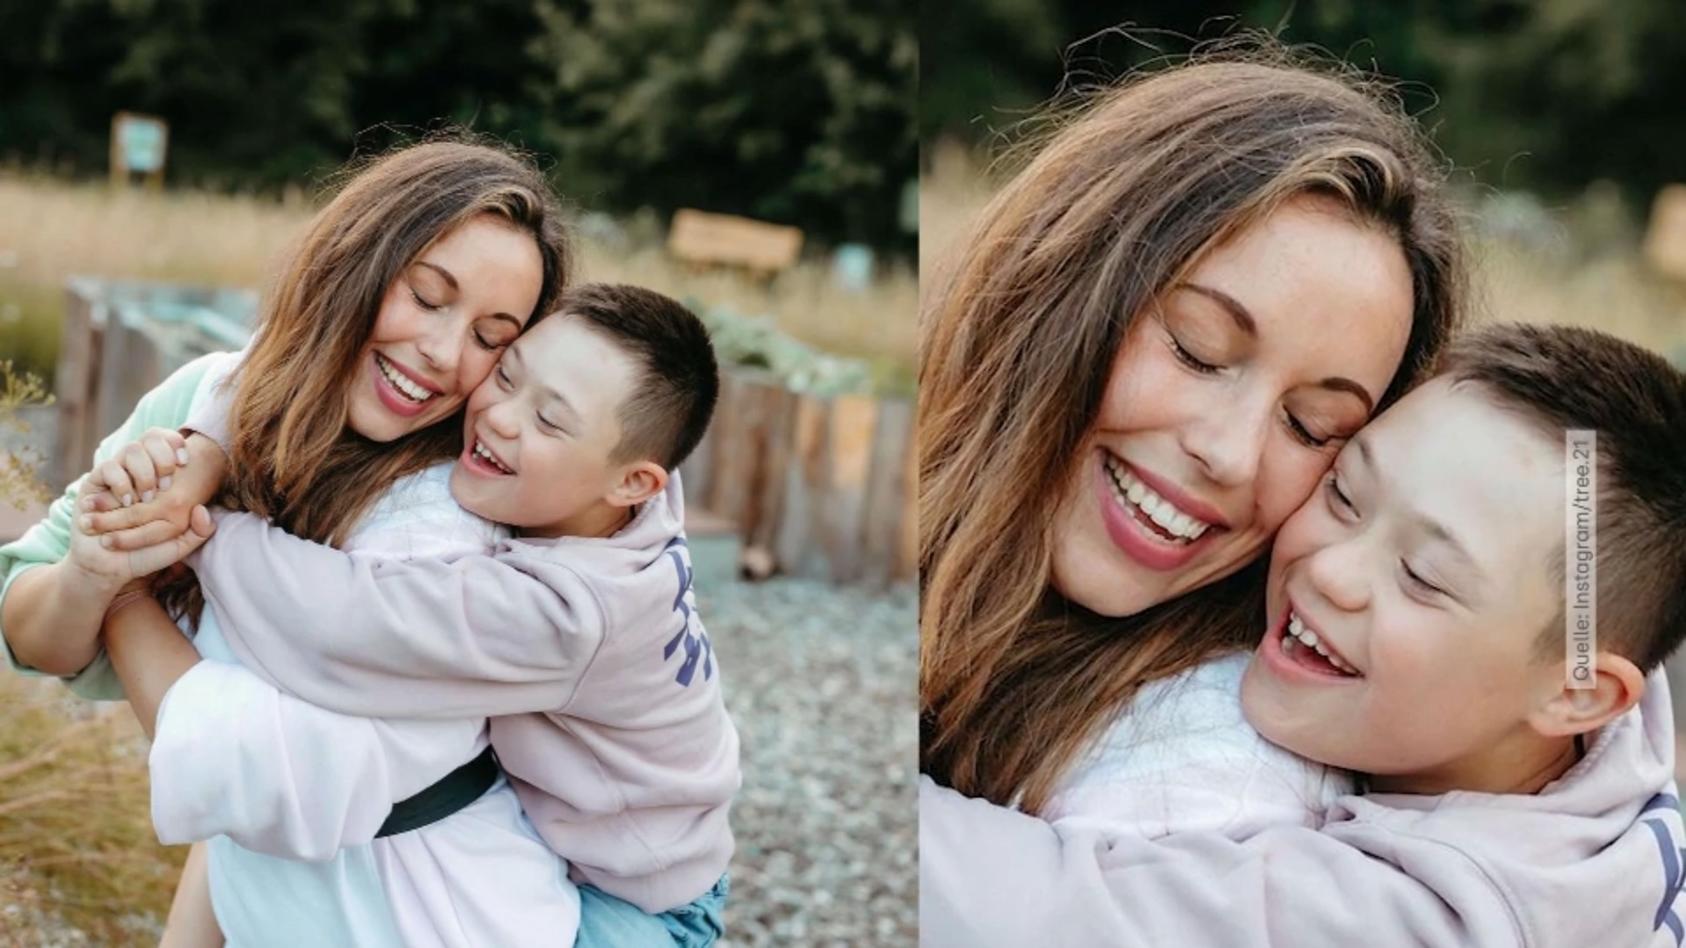 Ihr Sohn hat das Down-Syndrom - Für diese Insta-Mum hagelt es Kritik